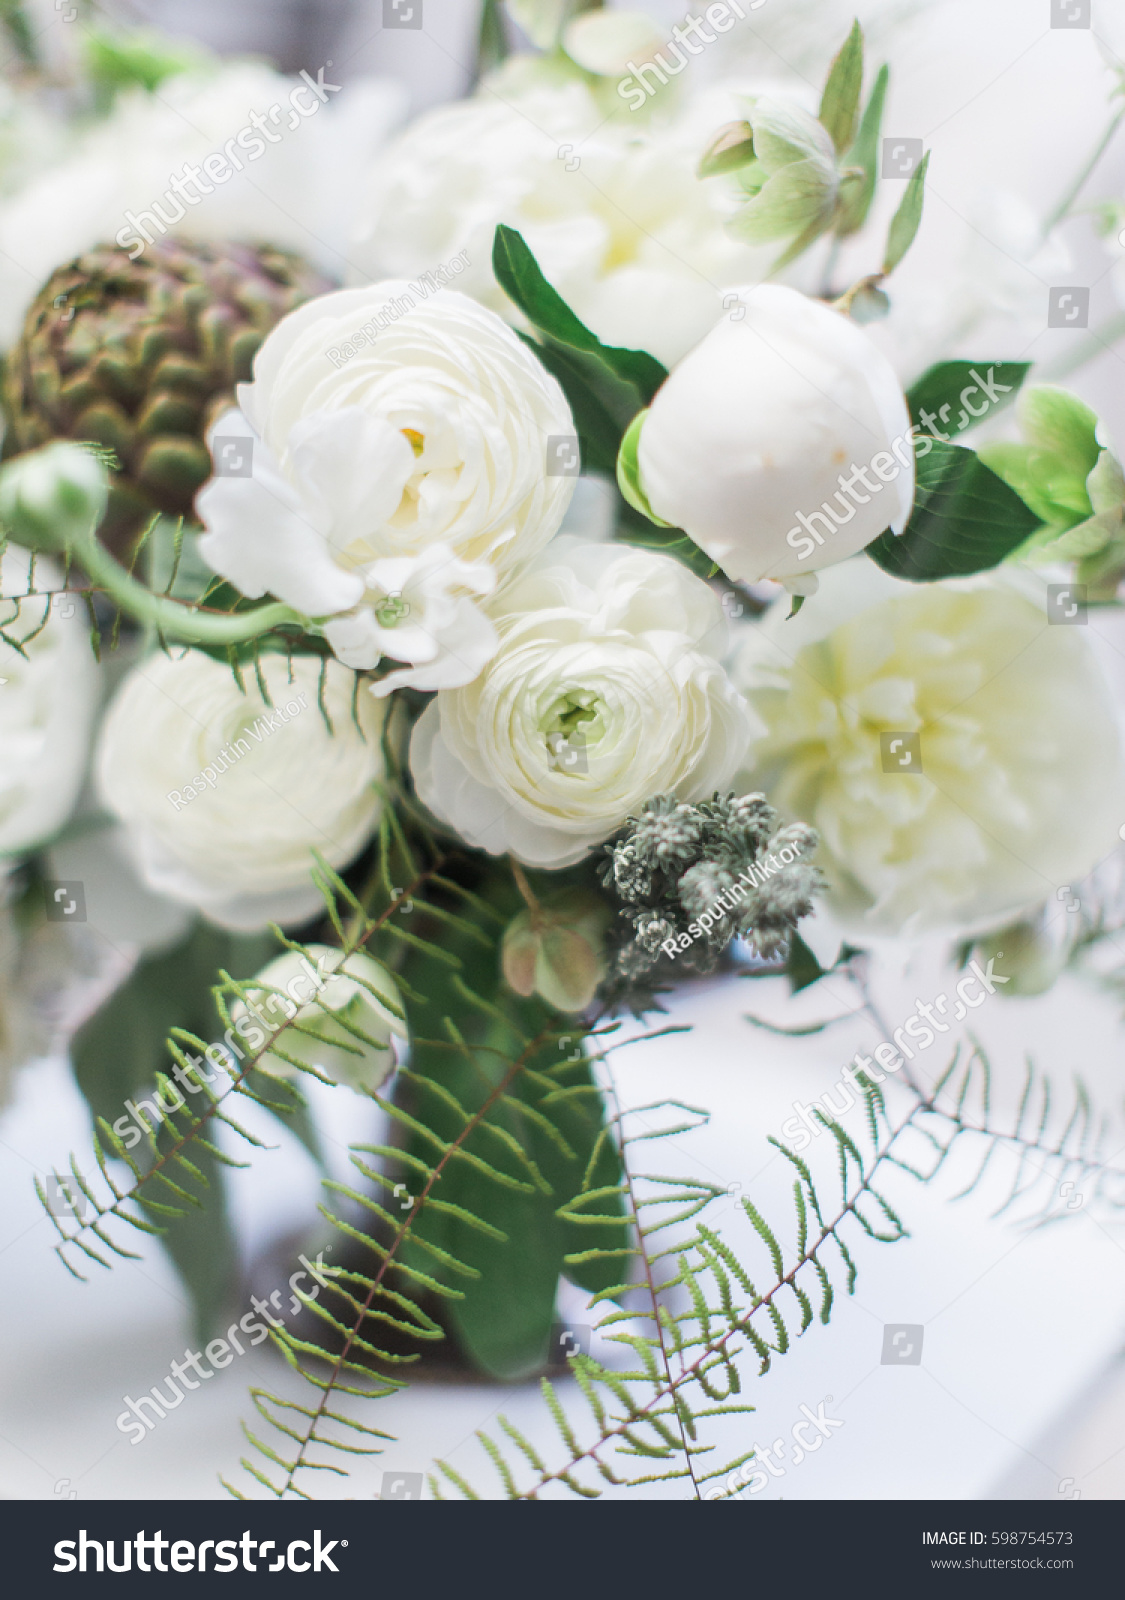 Modern Wedding White Flower Bouquet Bride Stock Photo Edit Now 598754573